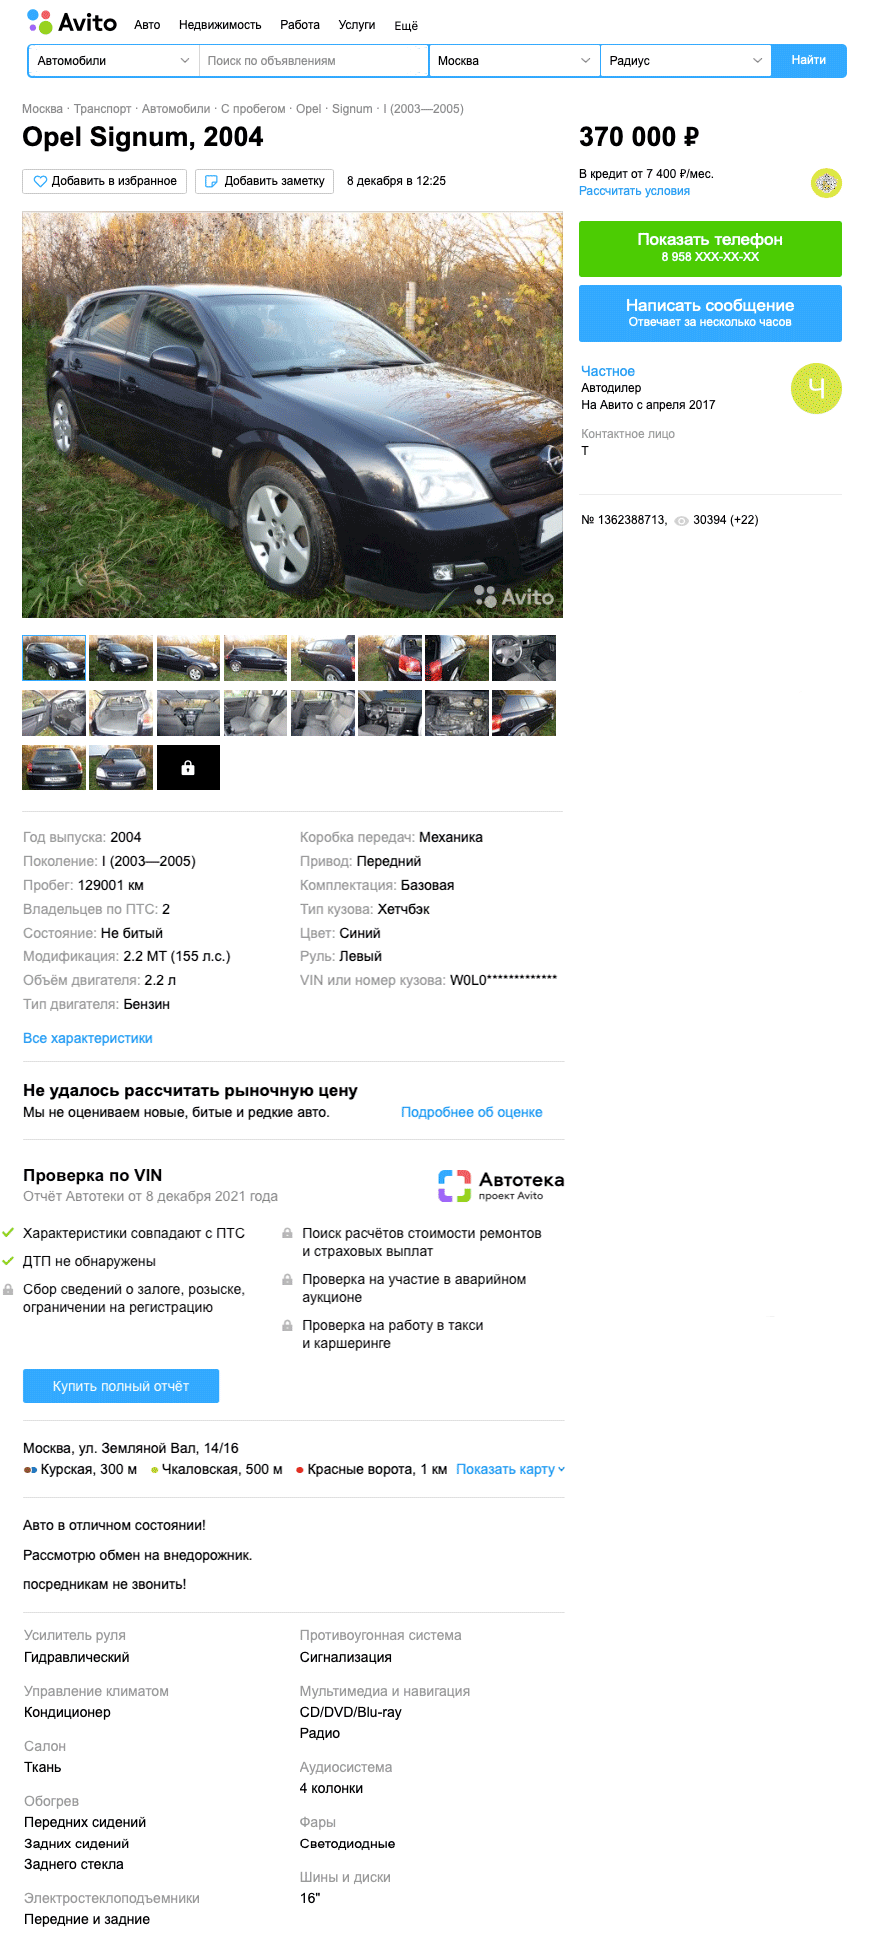 Претензии на бизнес в кузове хэтчбек: стоит ли покупать Opel Signum за 500 тысяч рублей